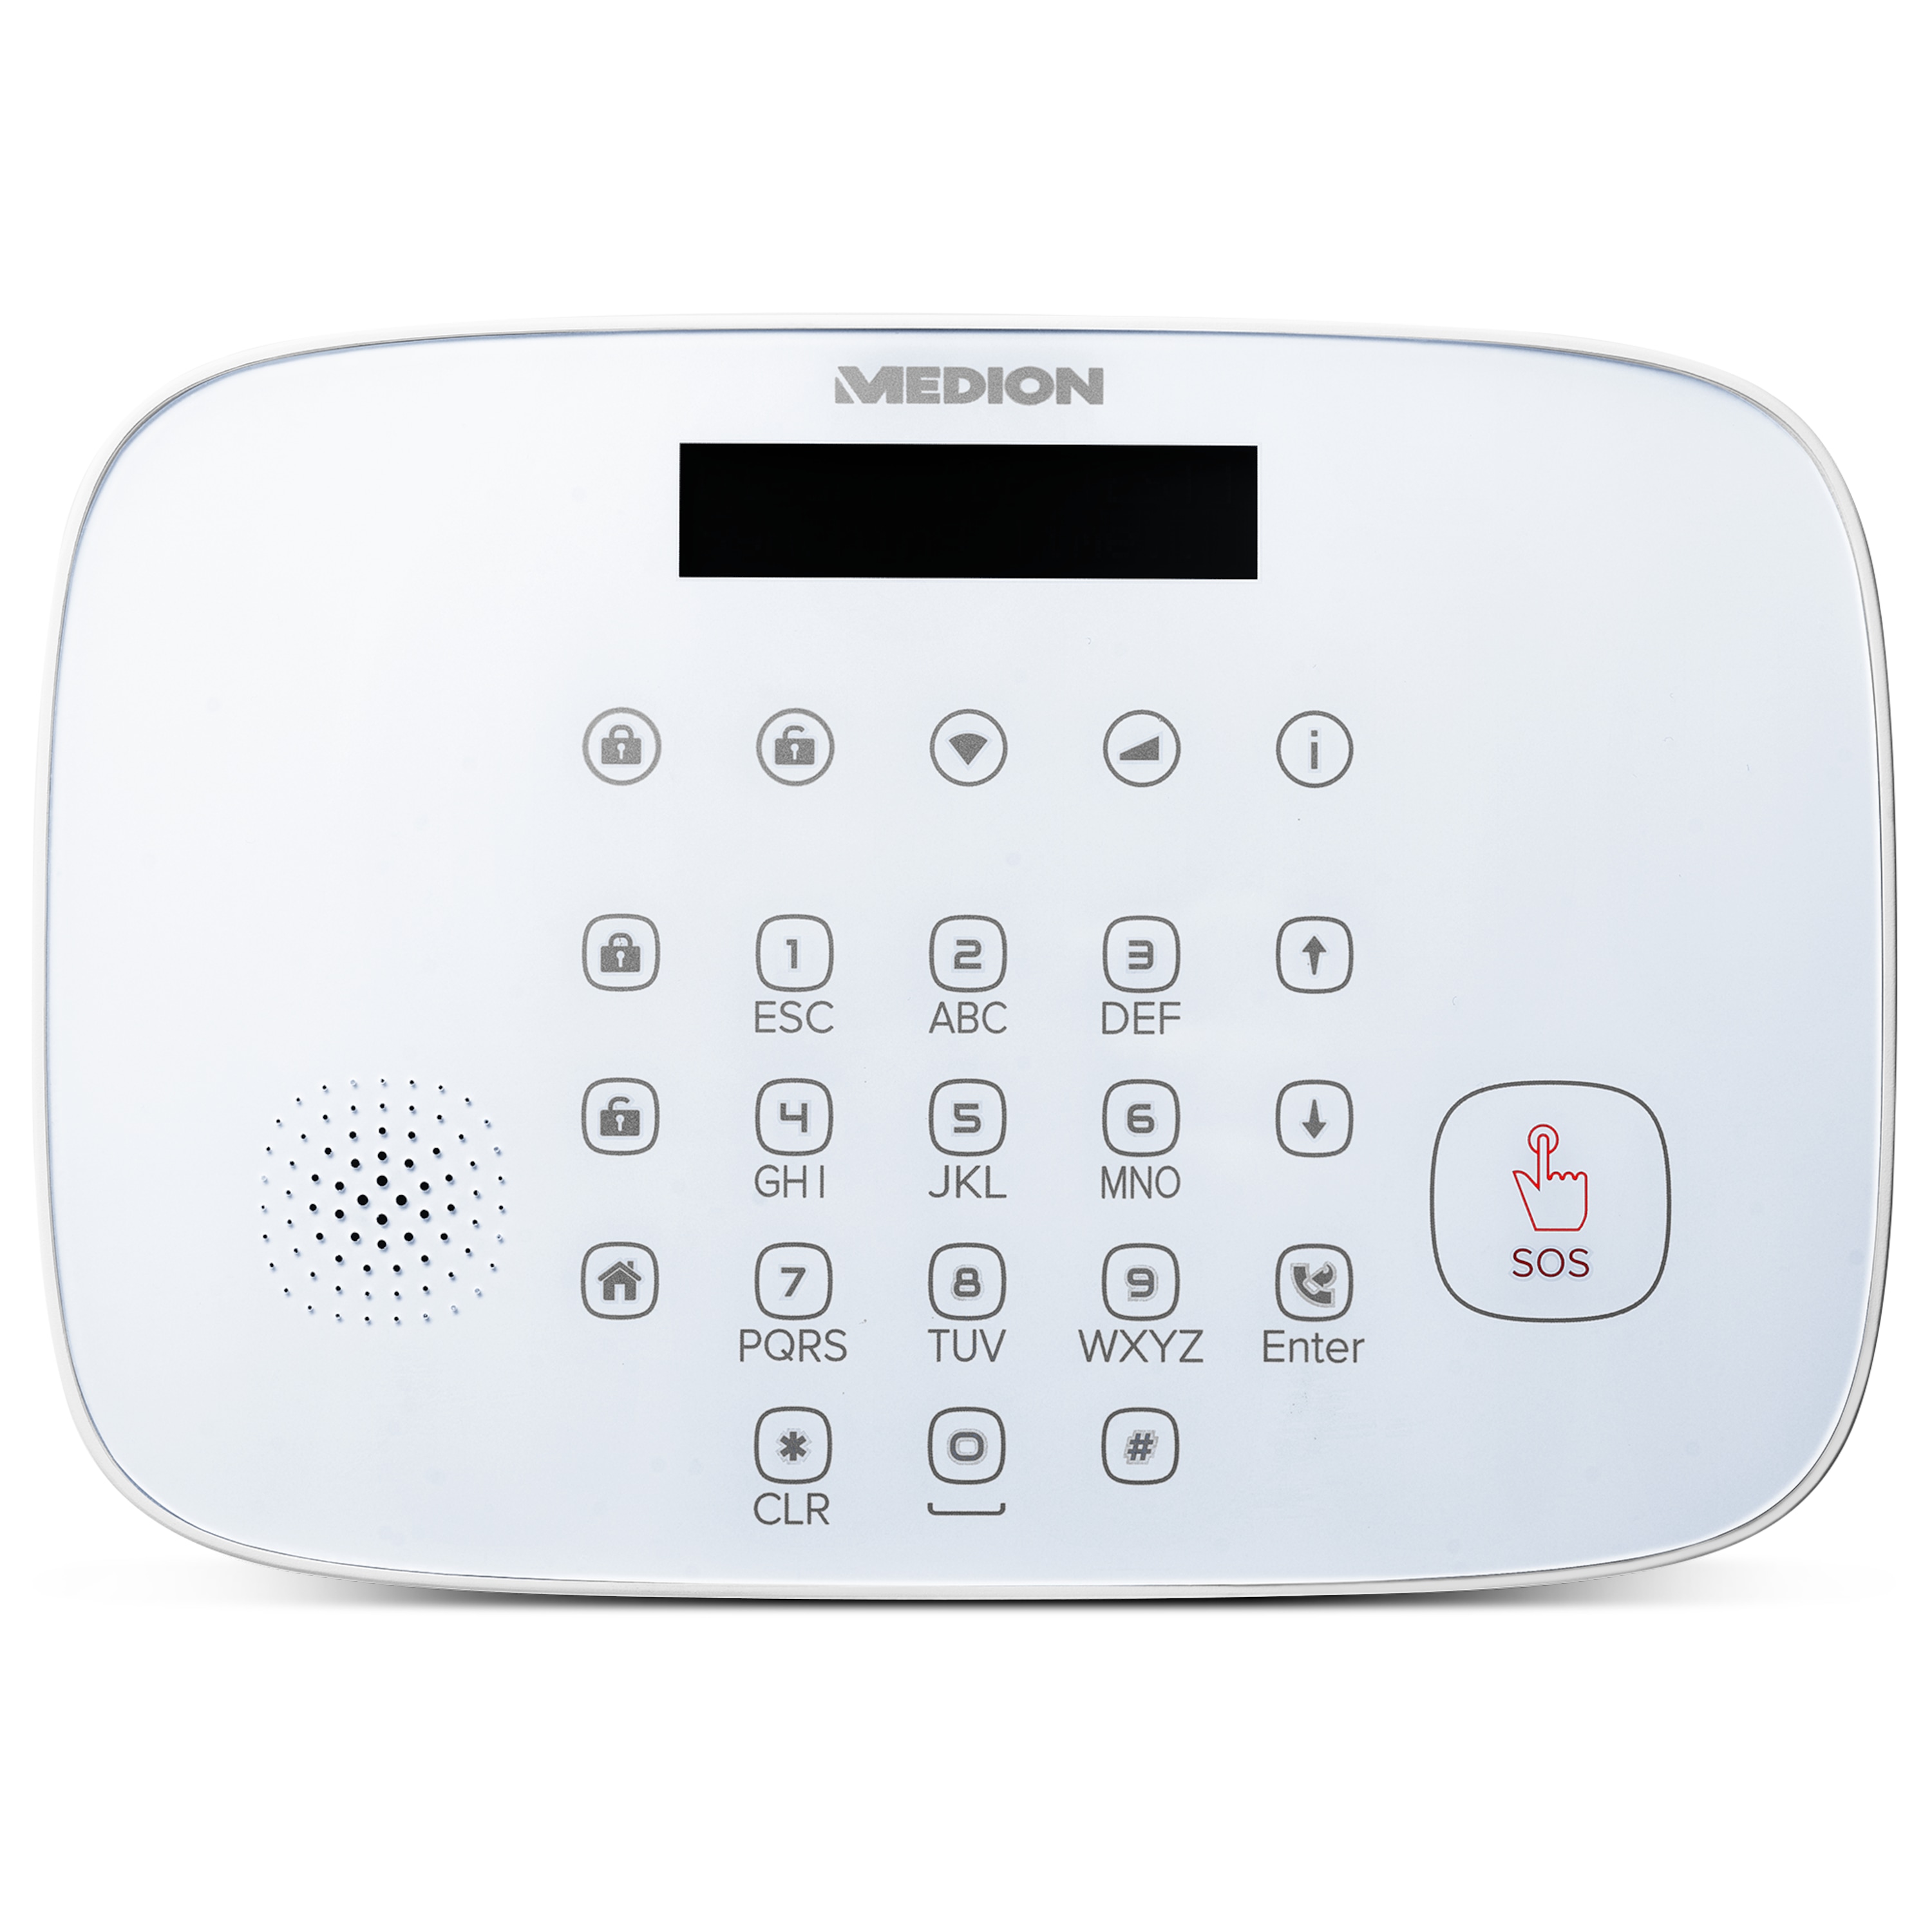 MEDION® Smart Home Alarmsystem Zentrale P85732, Zuverlässige Sicherheit im Haus, Echtzeit Benachrichtigung, Datentransfer via Mobilfunk & WLAN